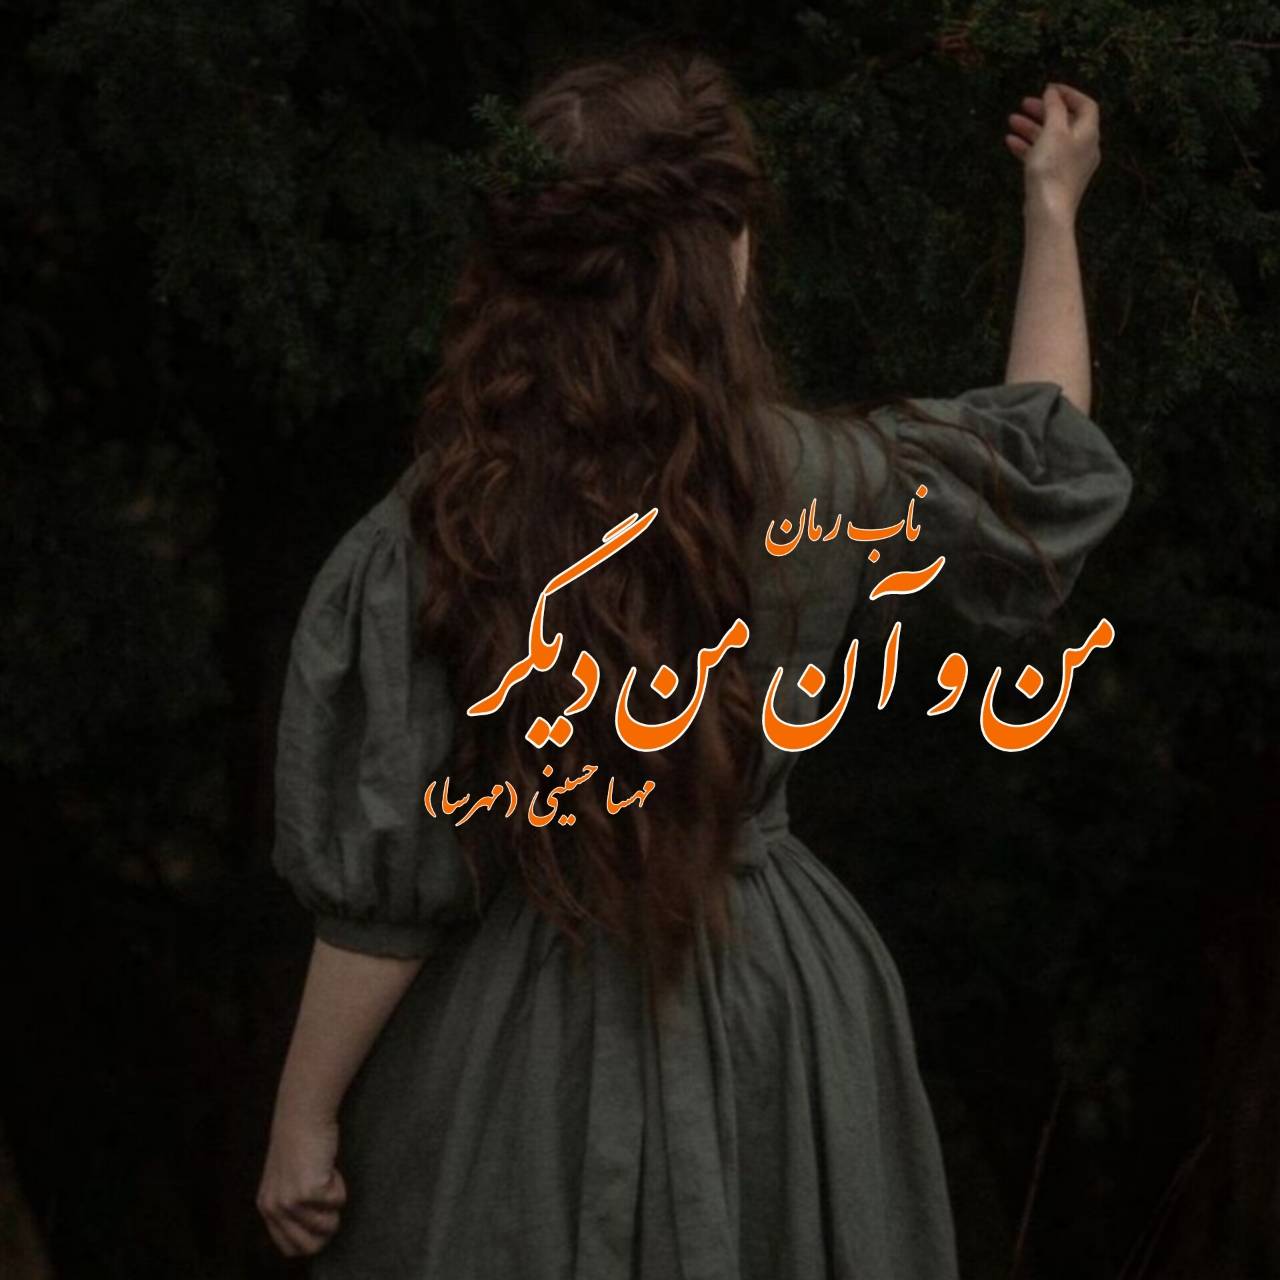 دانلود رمان من و آن من دیگر (گان دوم) pdf از مهسا حسینی (مهرسا)